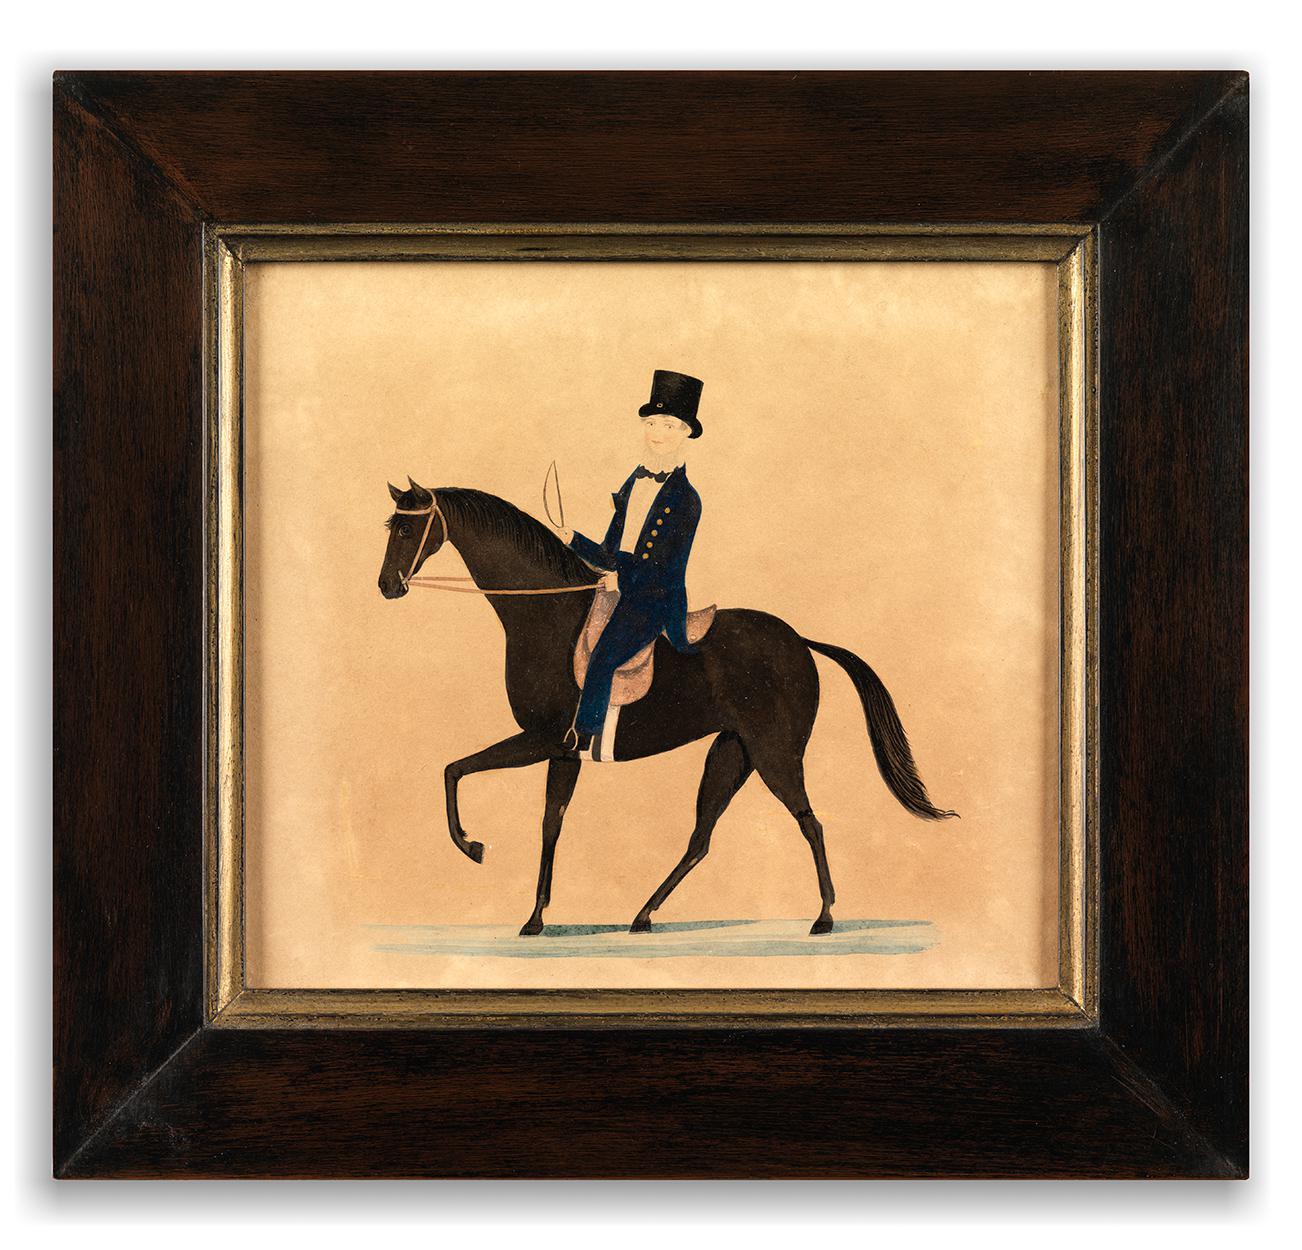 A Delightful Naïve Folk Art Portrait of a Young Man on Horseback